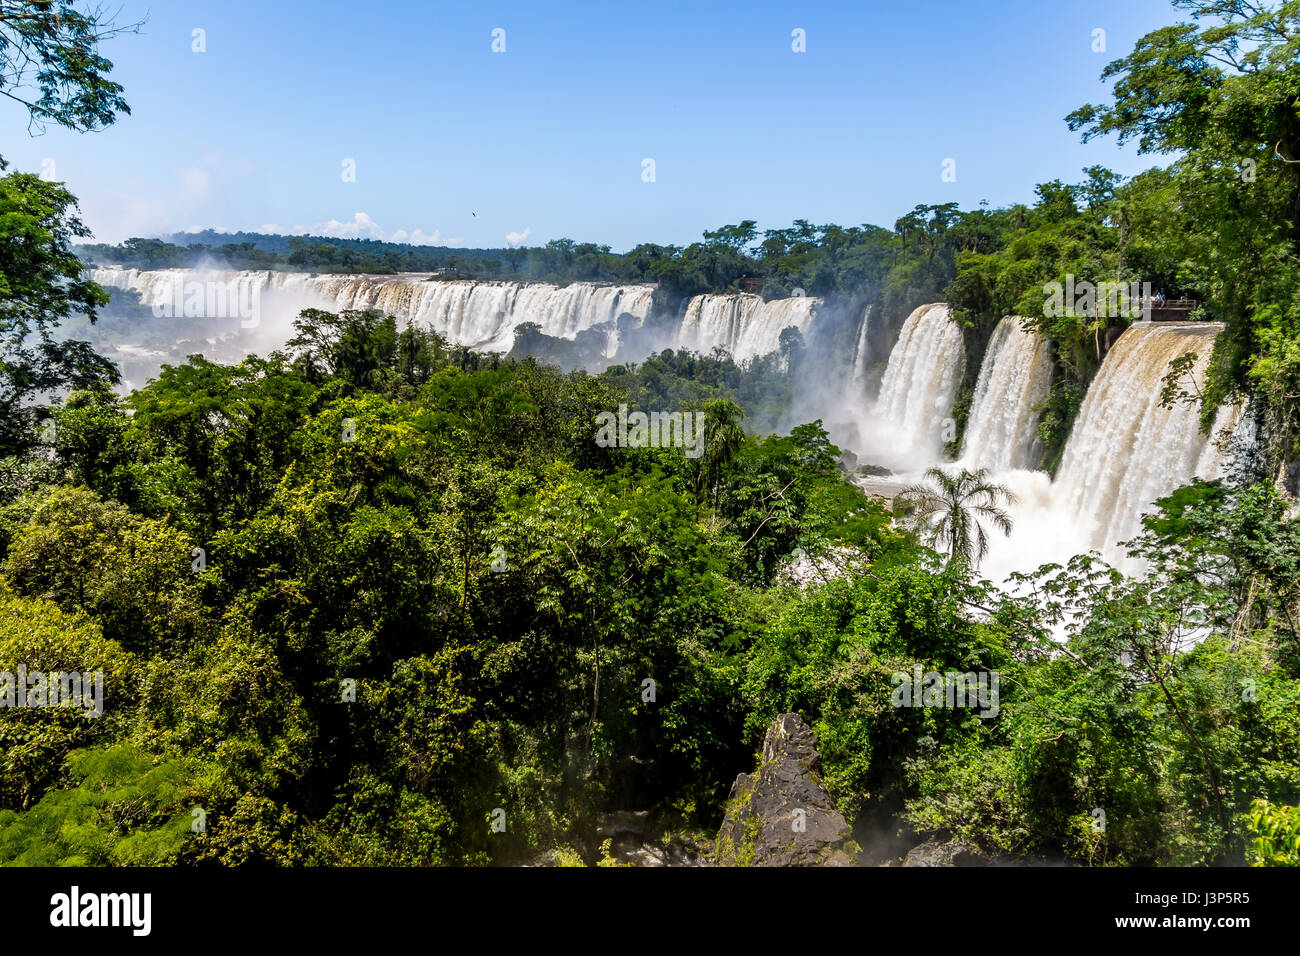 Vista de las Cataratas del Iguazú del lado argentino - Frontera de Brasil y Argentina Foto de stock